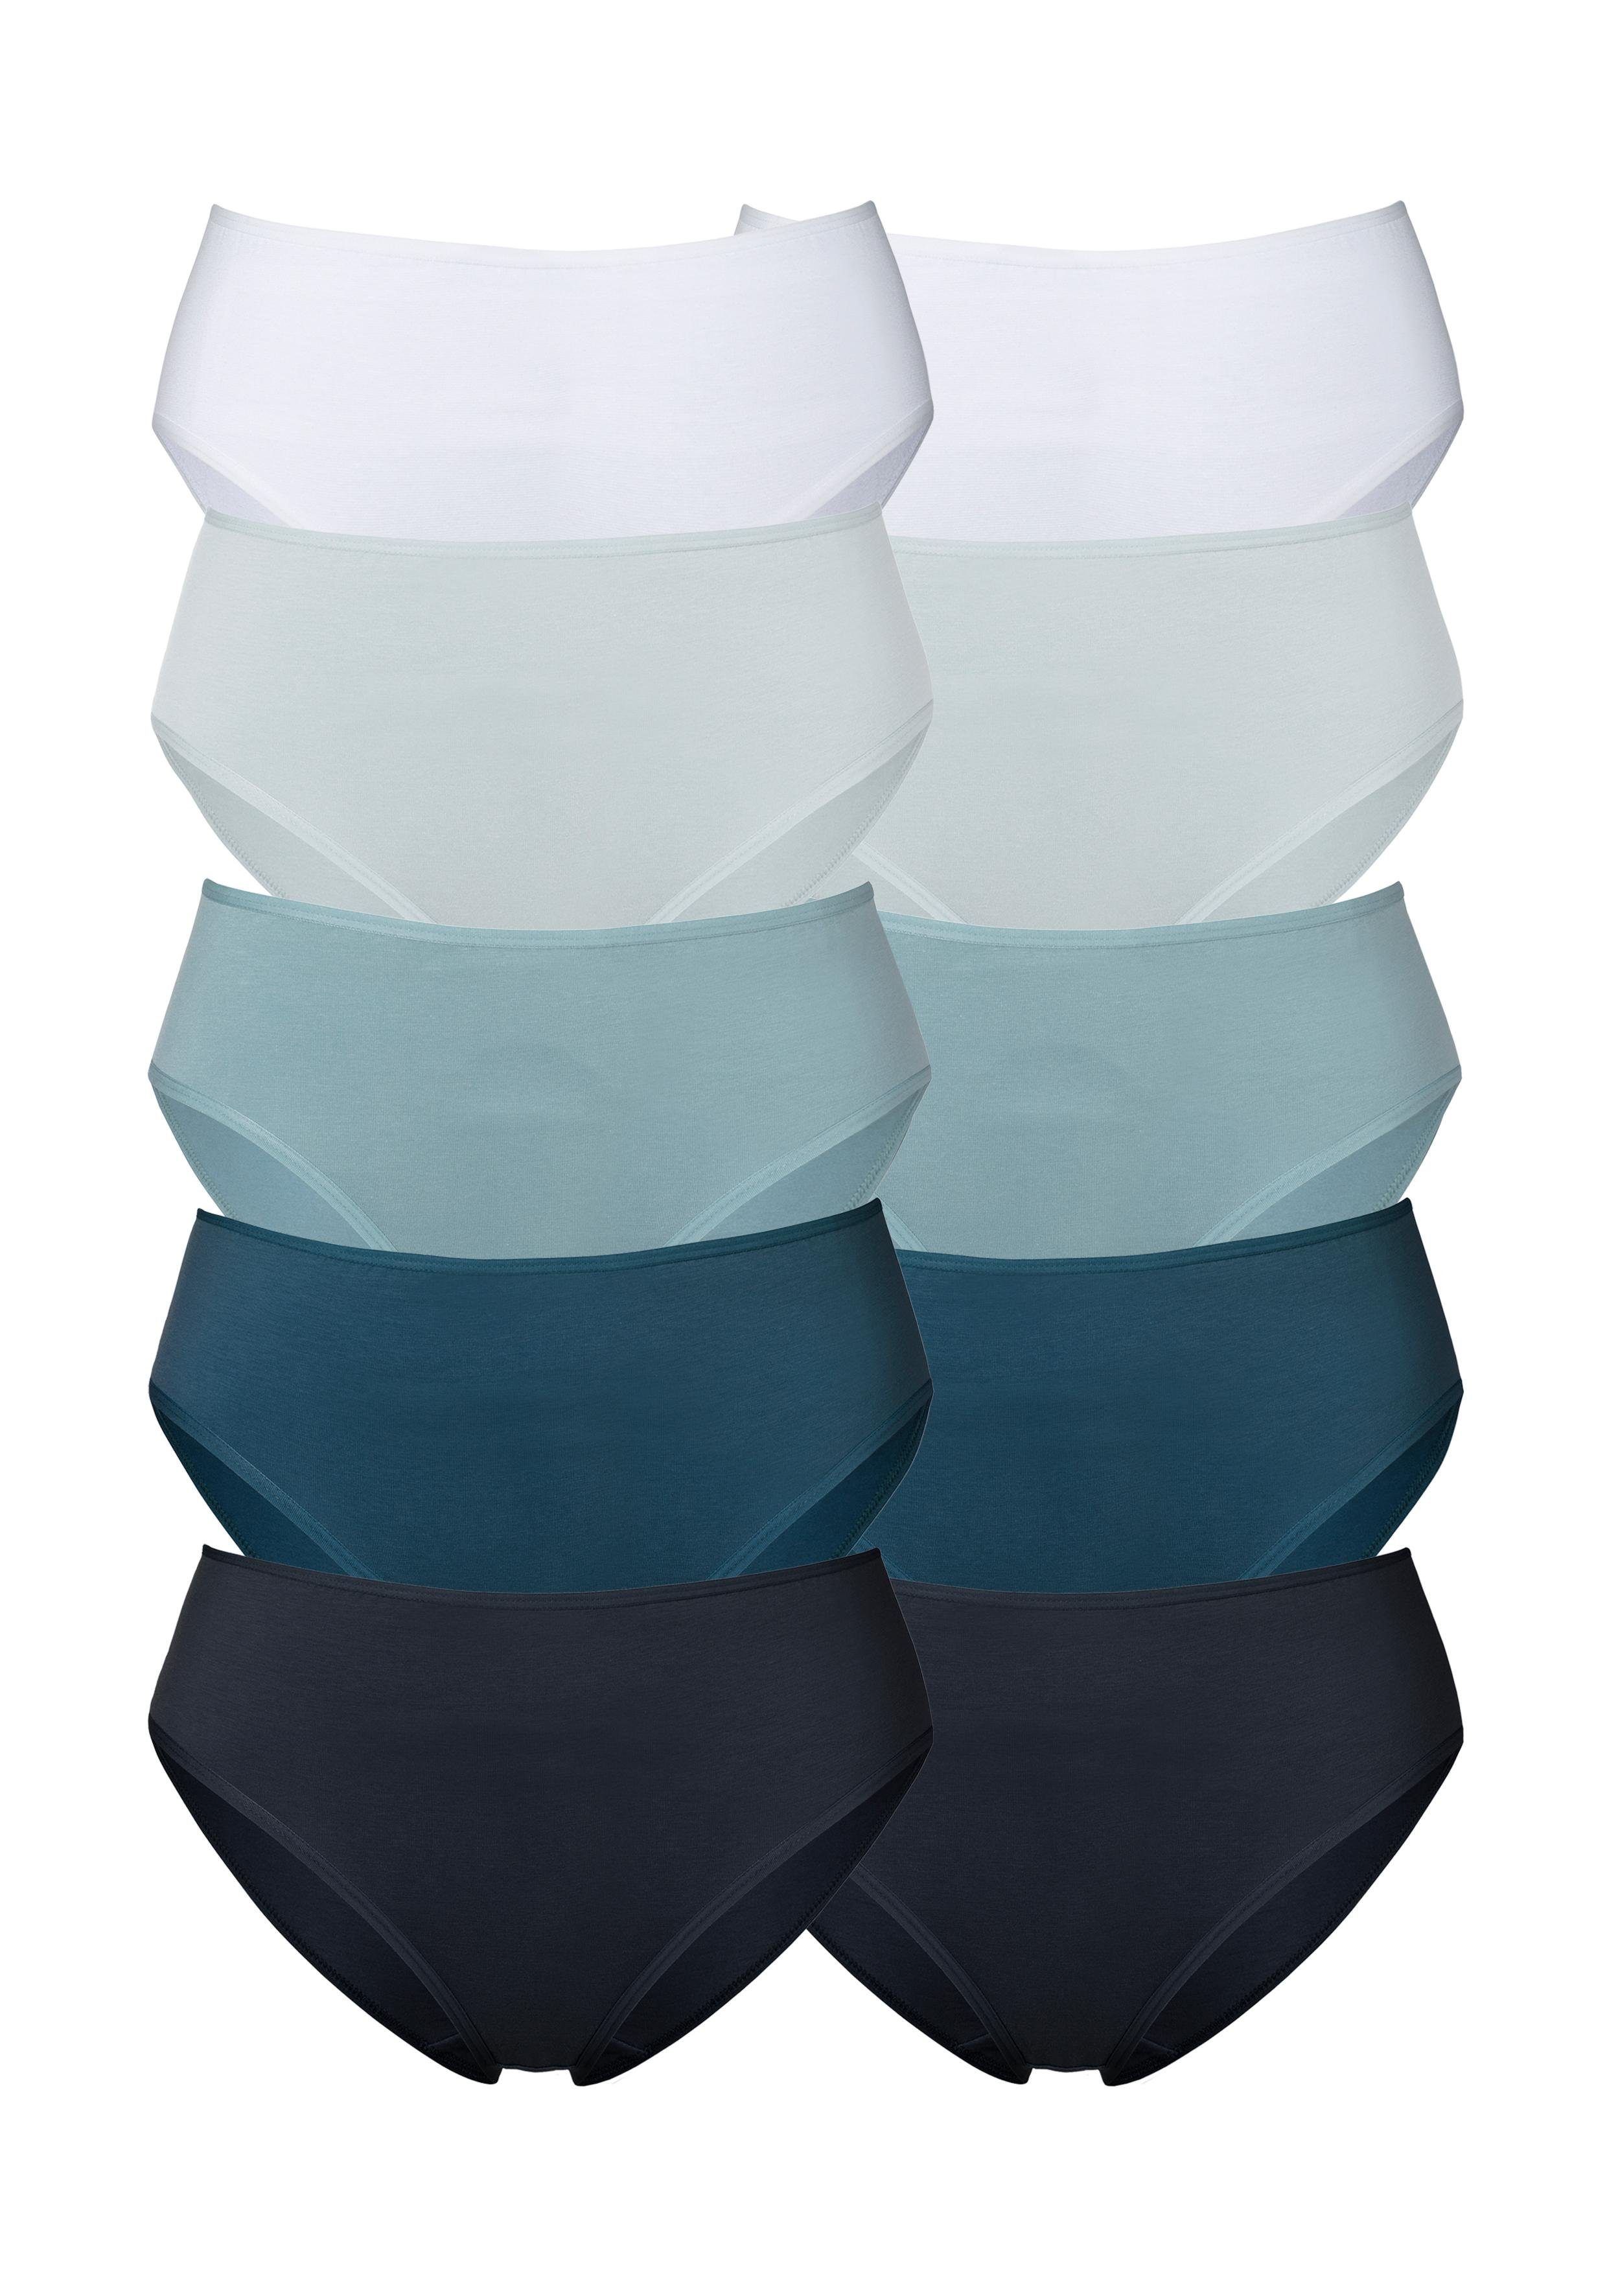 Damen-Unterhosen online kaufen | OTTO